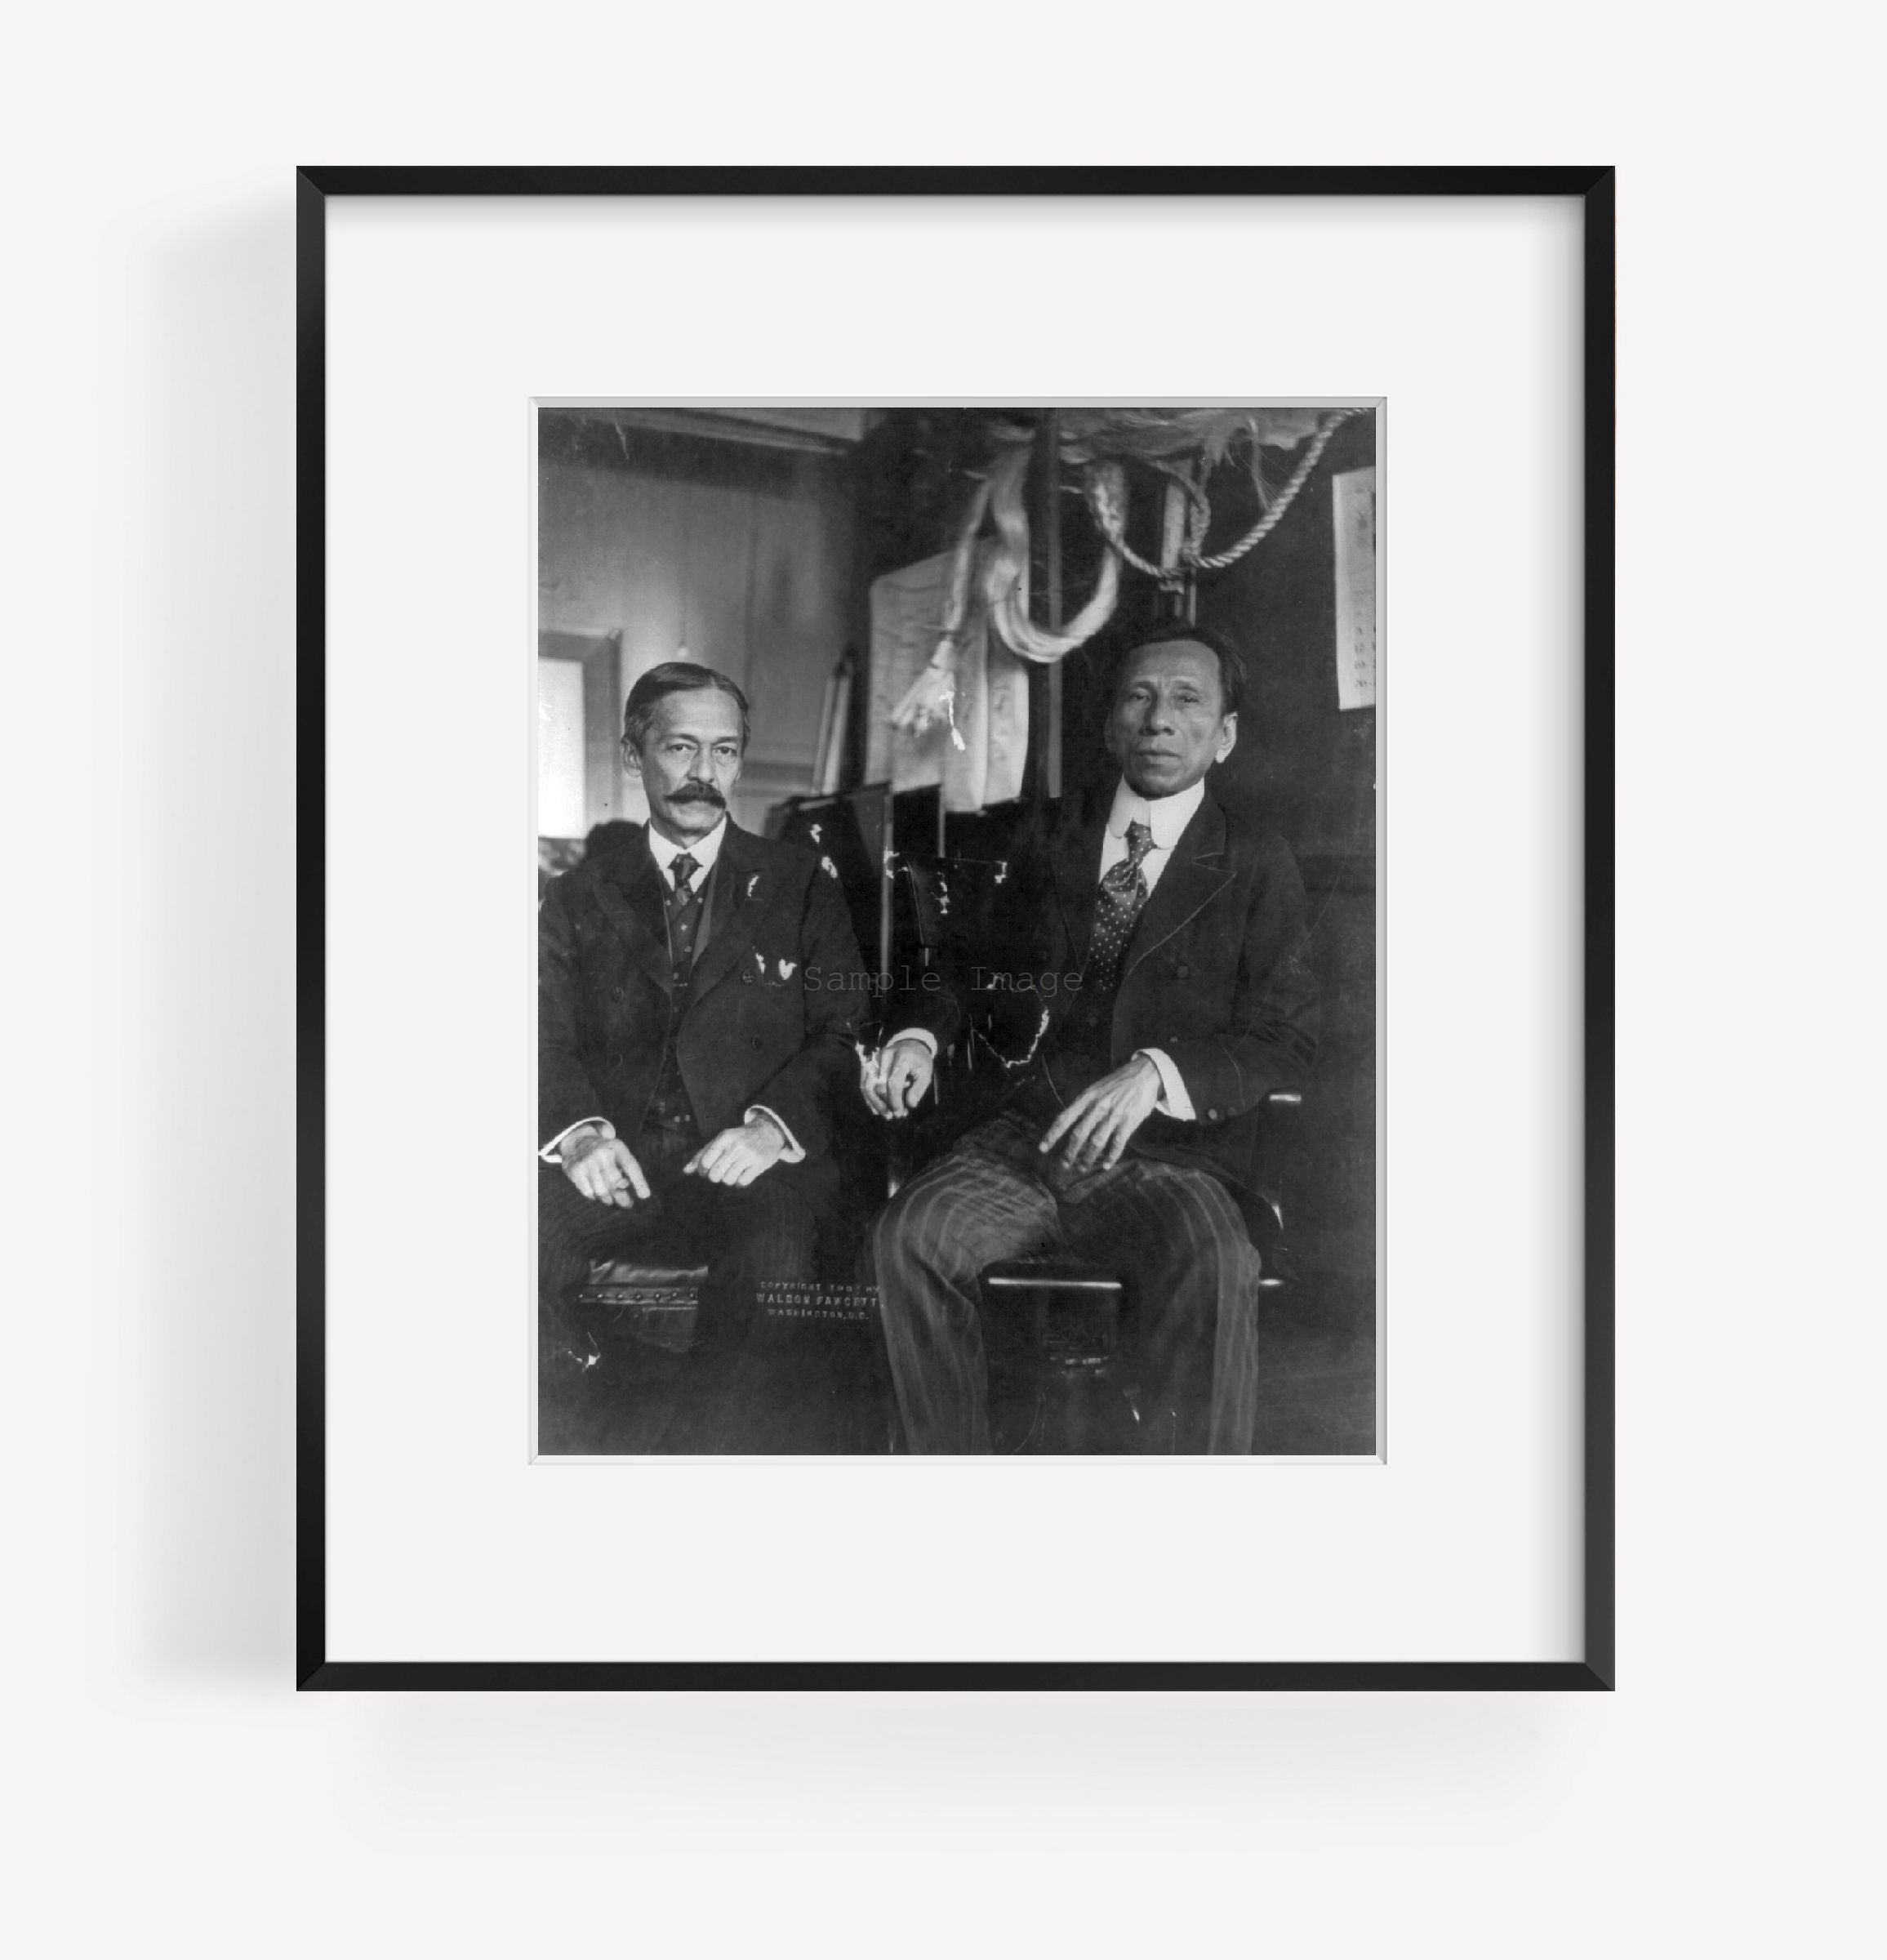 1908 Photo Philippine delegation in Congress (No. 3). Benito Legarda and Pablo O